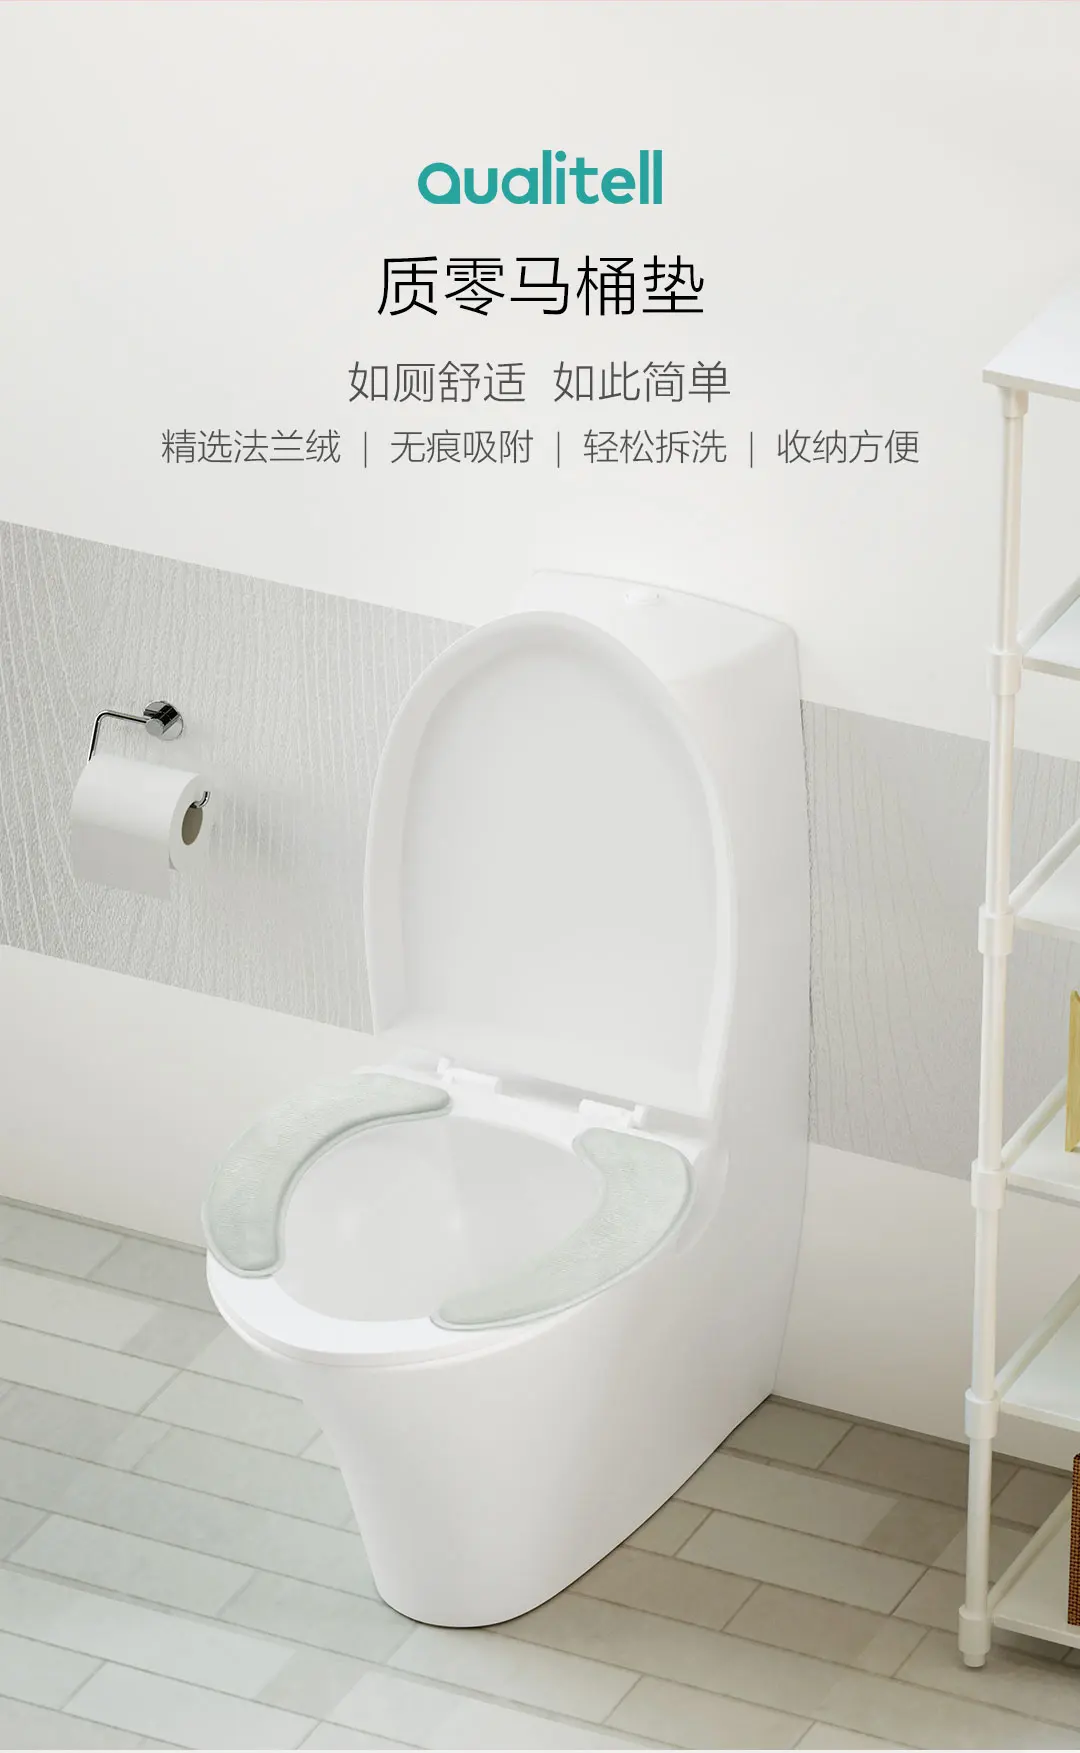 Xiaomi Mijia Qualitell 1 пар/уп. сиденье для унитаза зимнее сиденье для унитаза клейкое, не оставляя следов легко моется